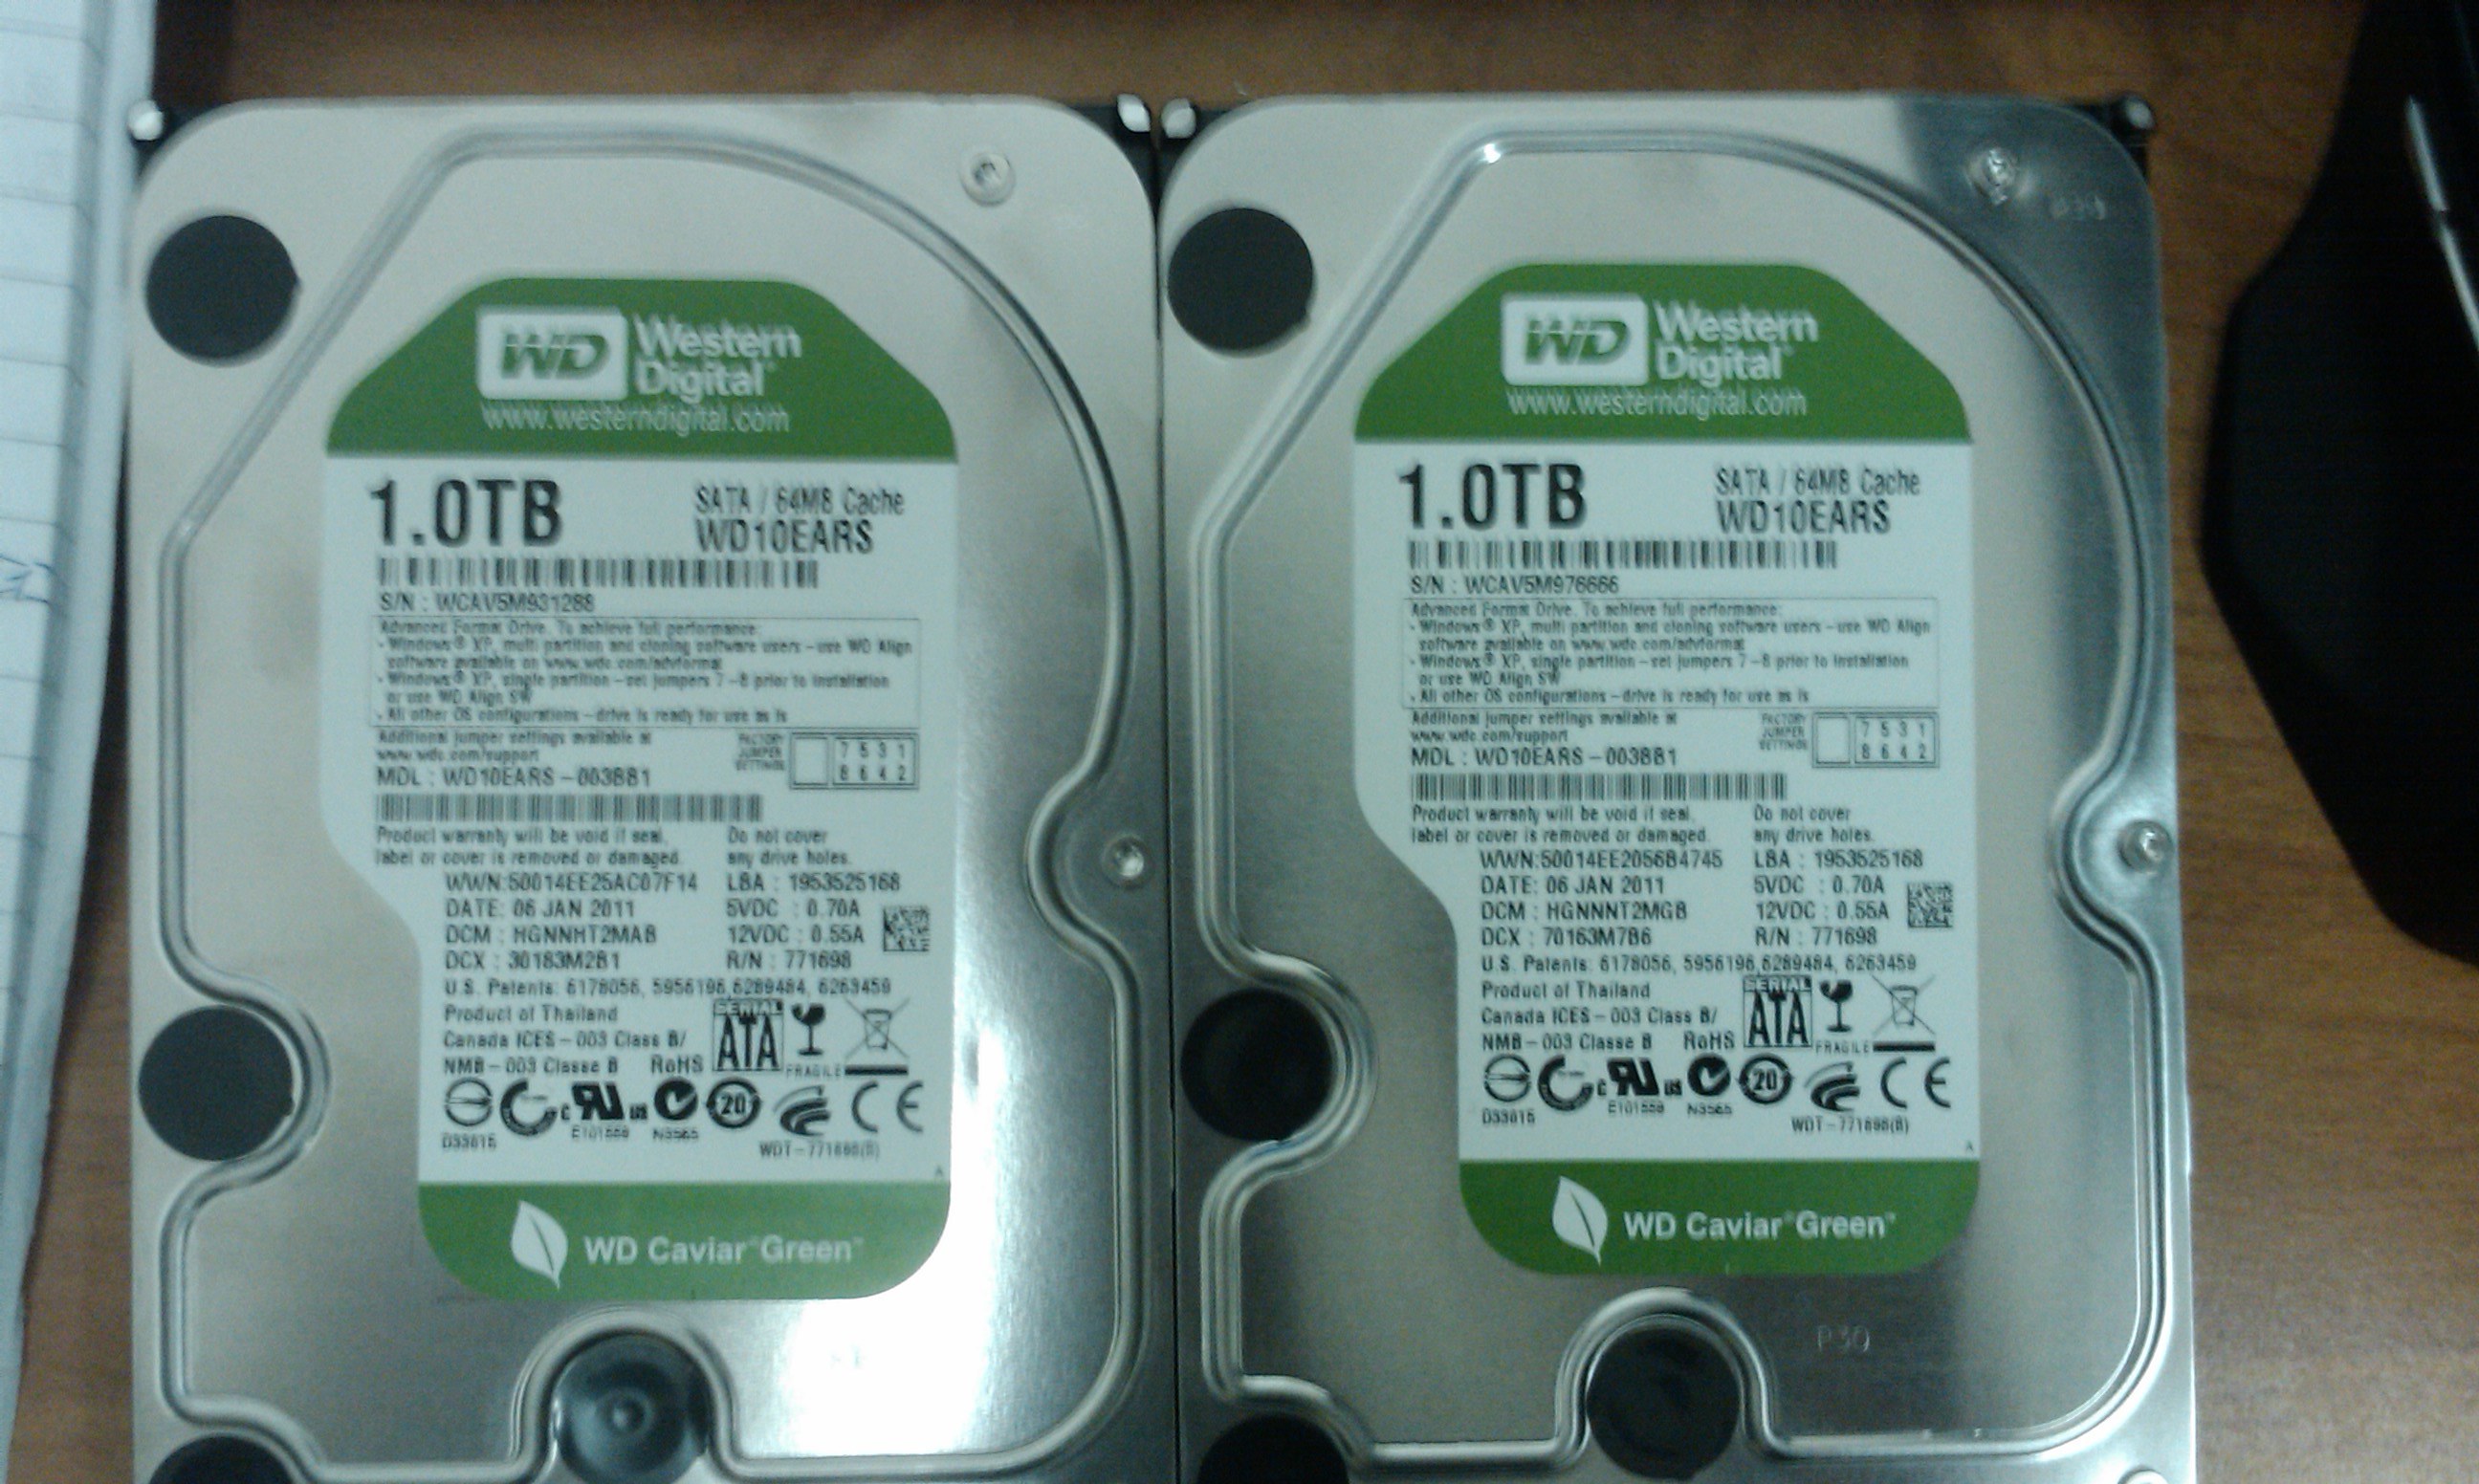 Vadný disk vlevo, nový disk vpravo - stejná série WD10EARS